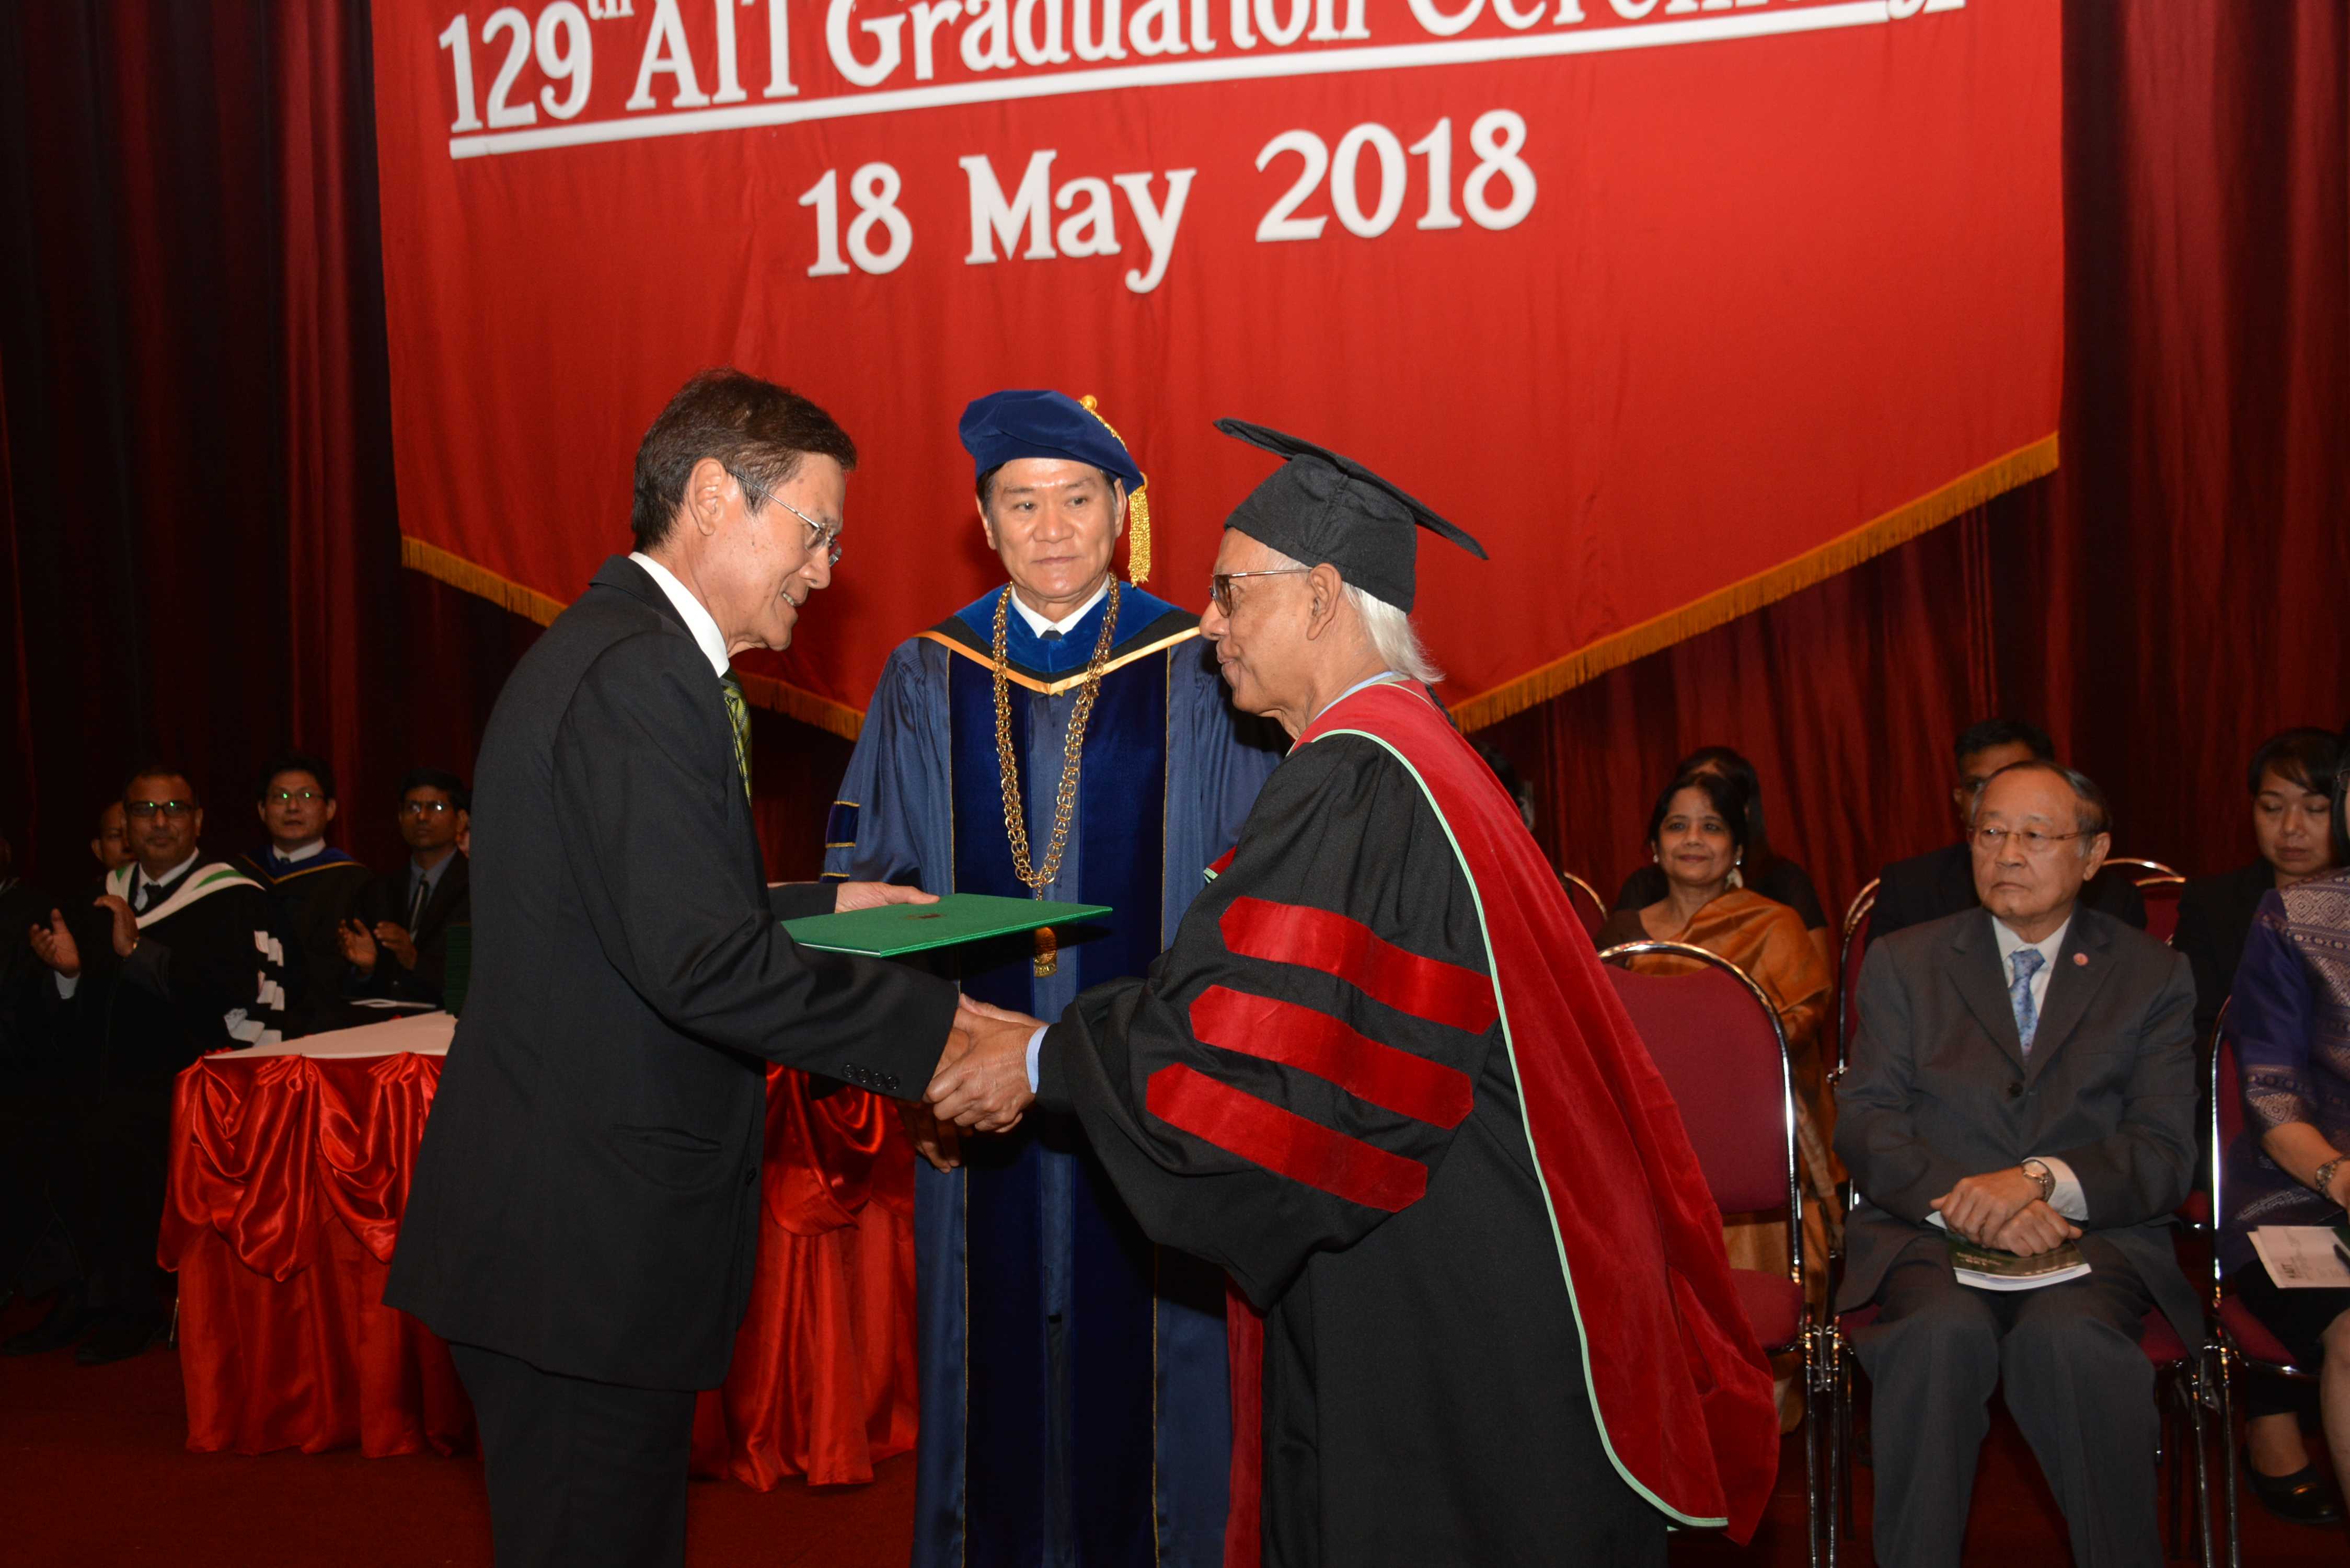 Prof ATM Nurul Amin felicitated with Emeritus Professor honor at Graduation